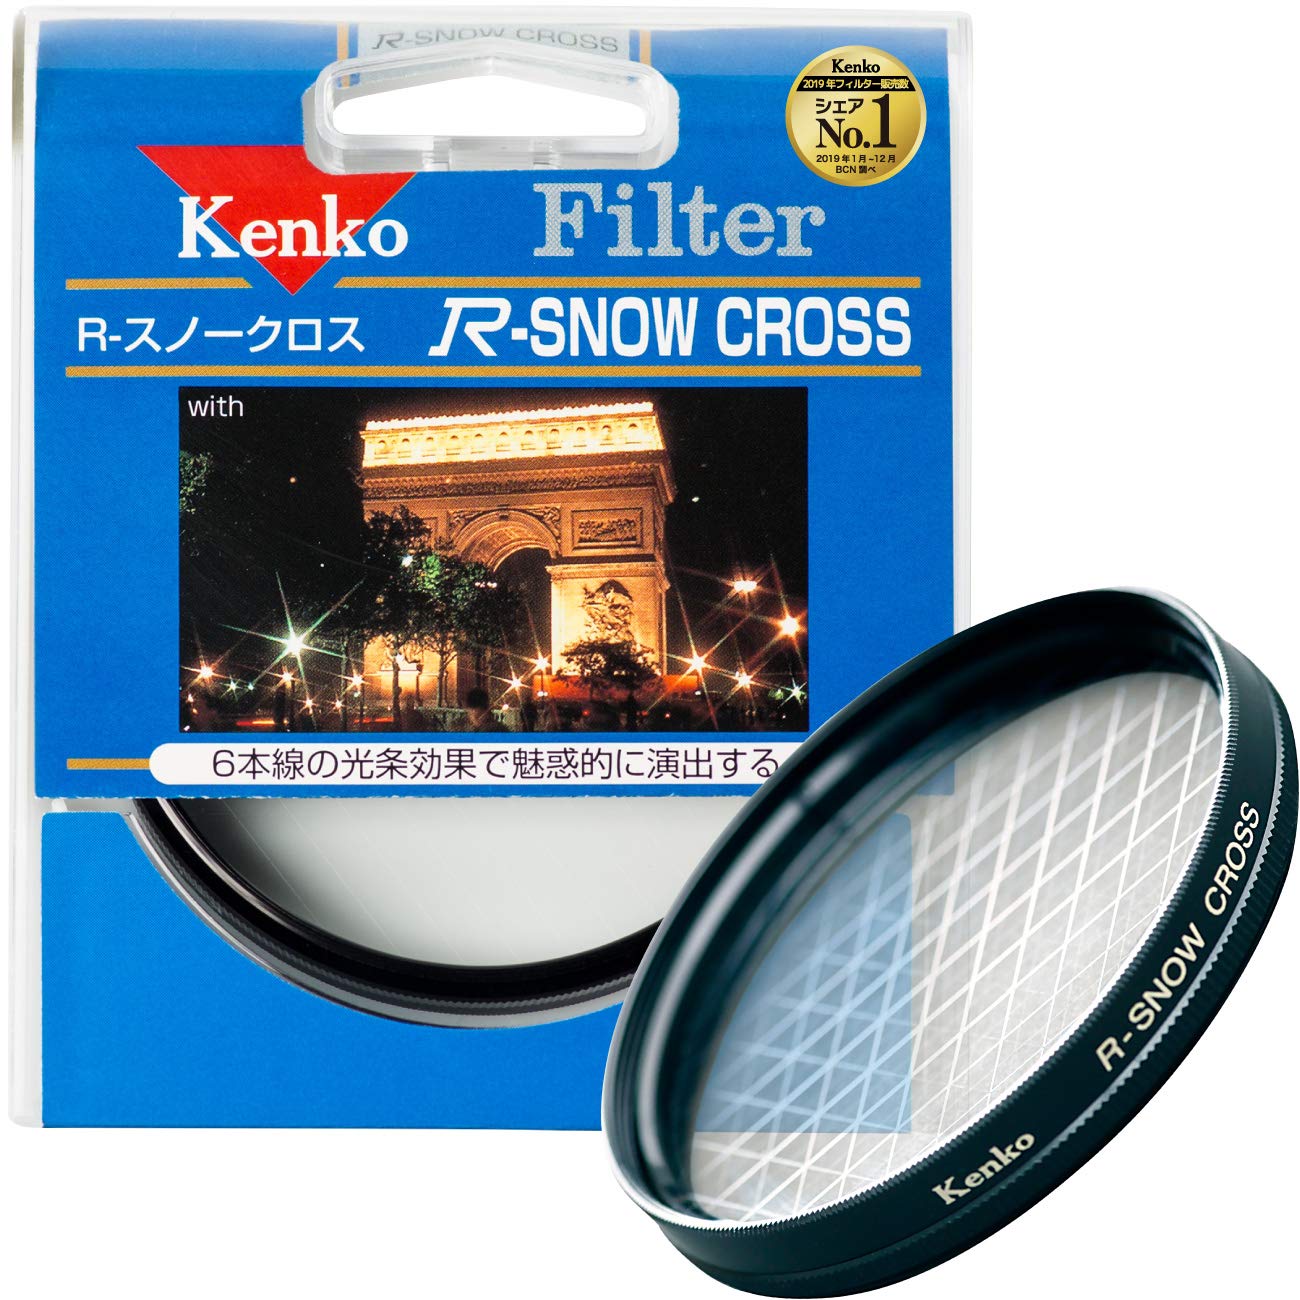 Kenko レンズフィルター R-スノークロス 52mm クロス効果用 352212